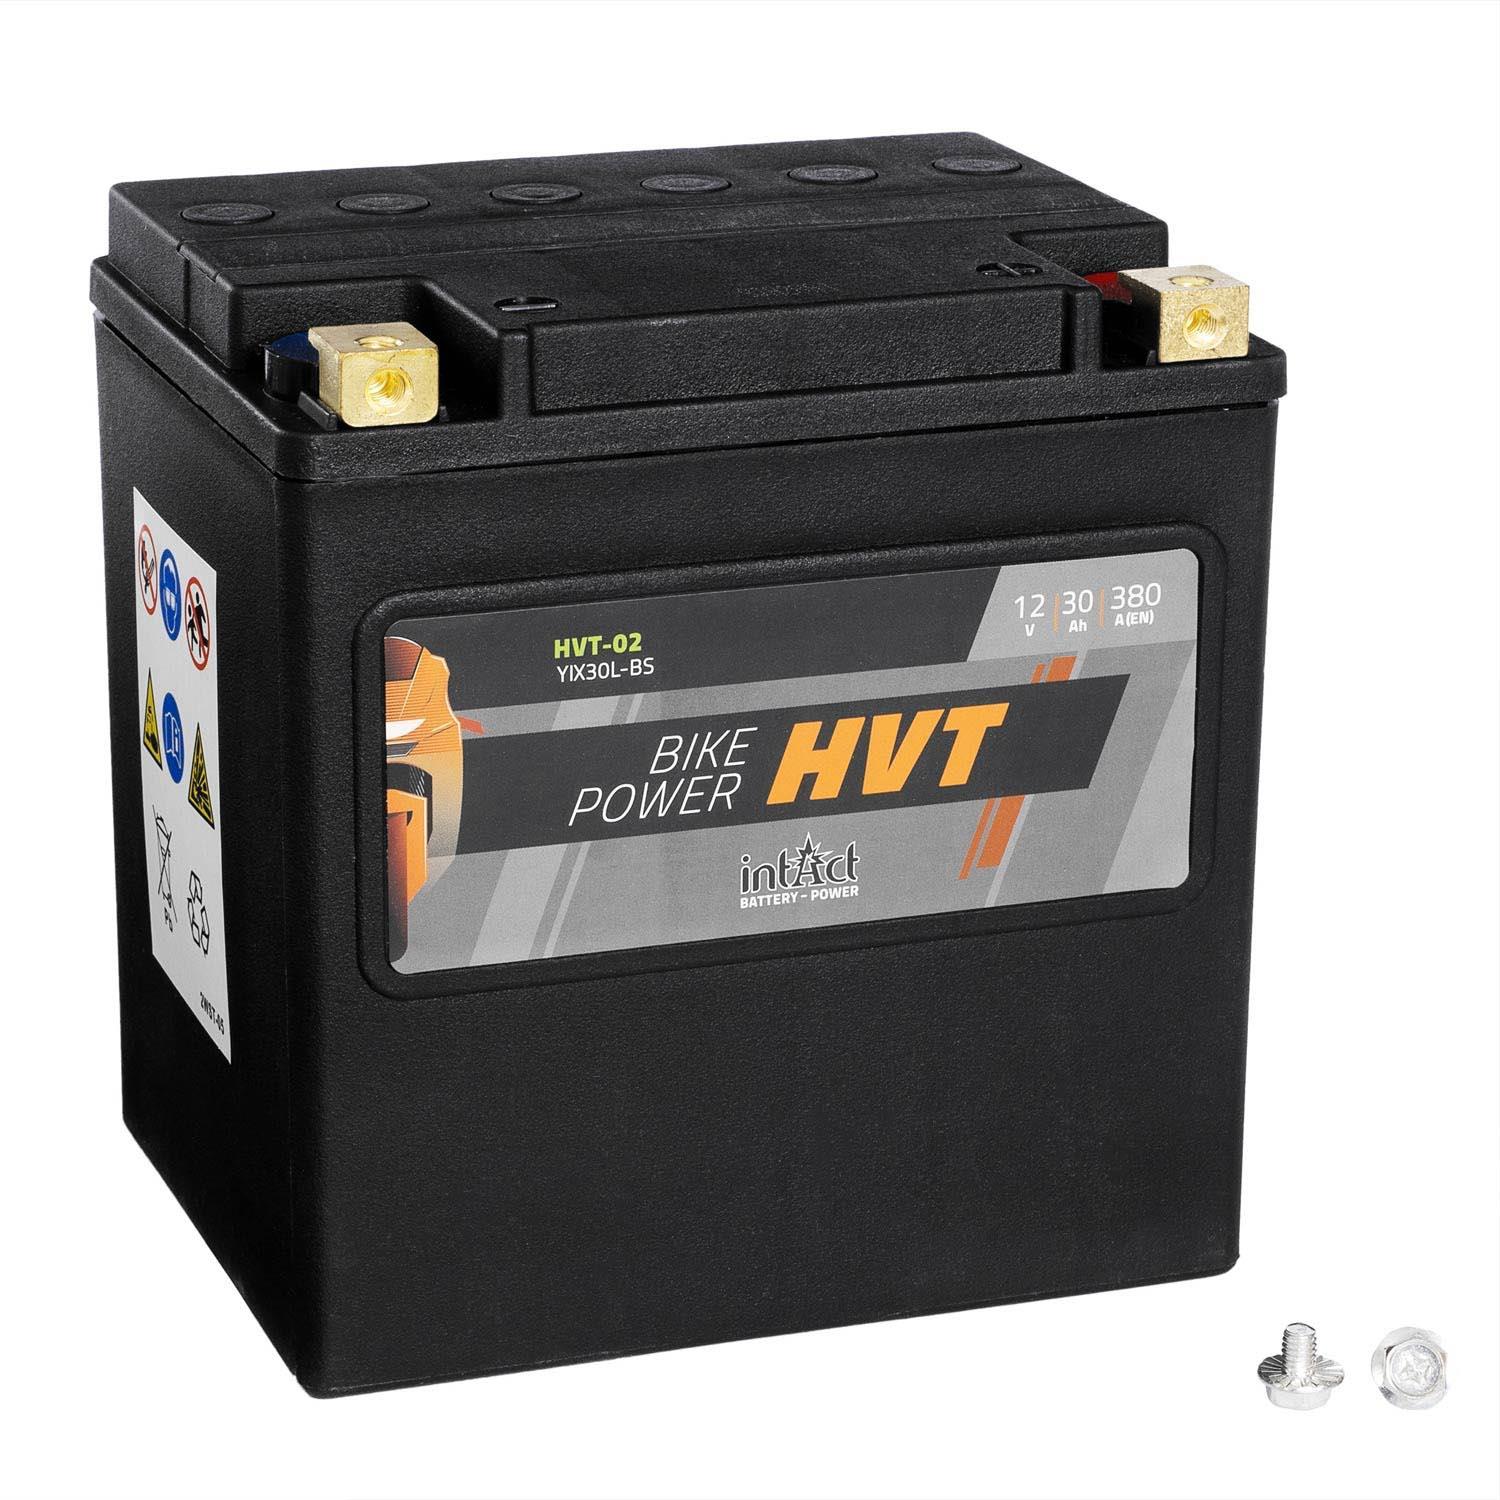 intAct Bike-Power Motorradbatterie HVT YIX30L-BS 12V 30Ah HVT-02